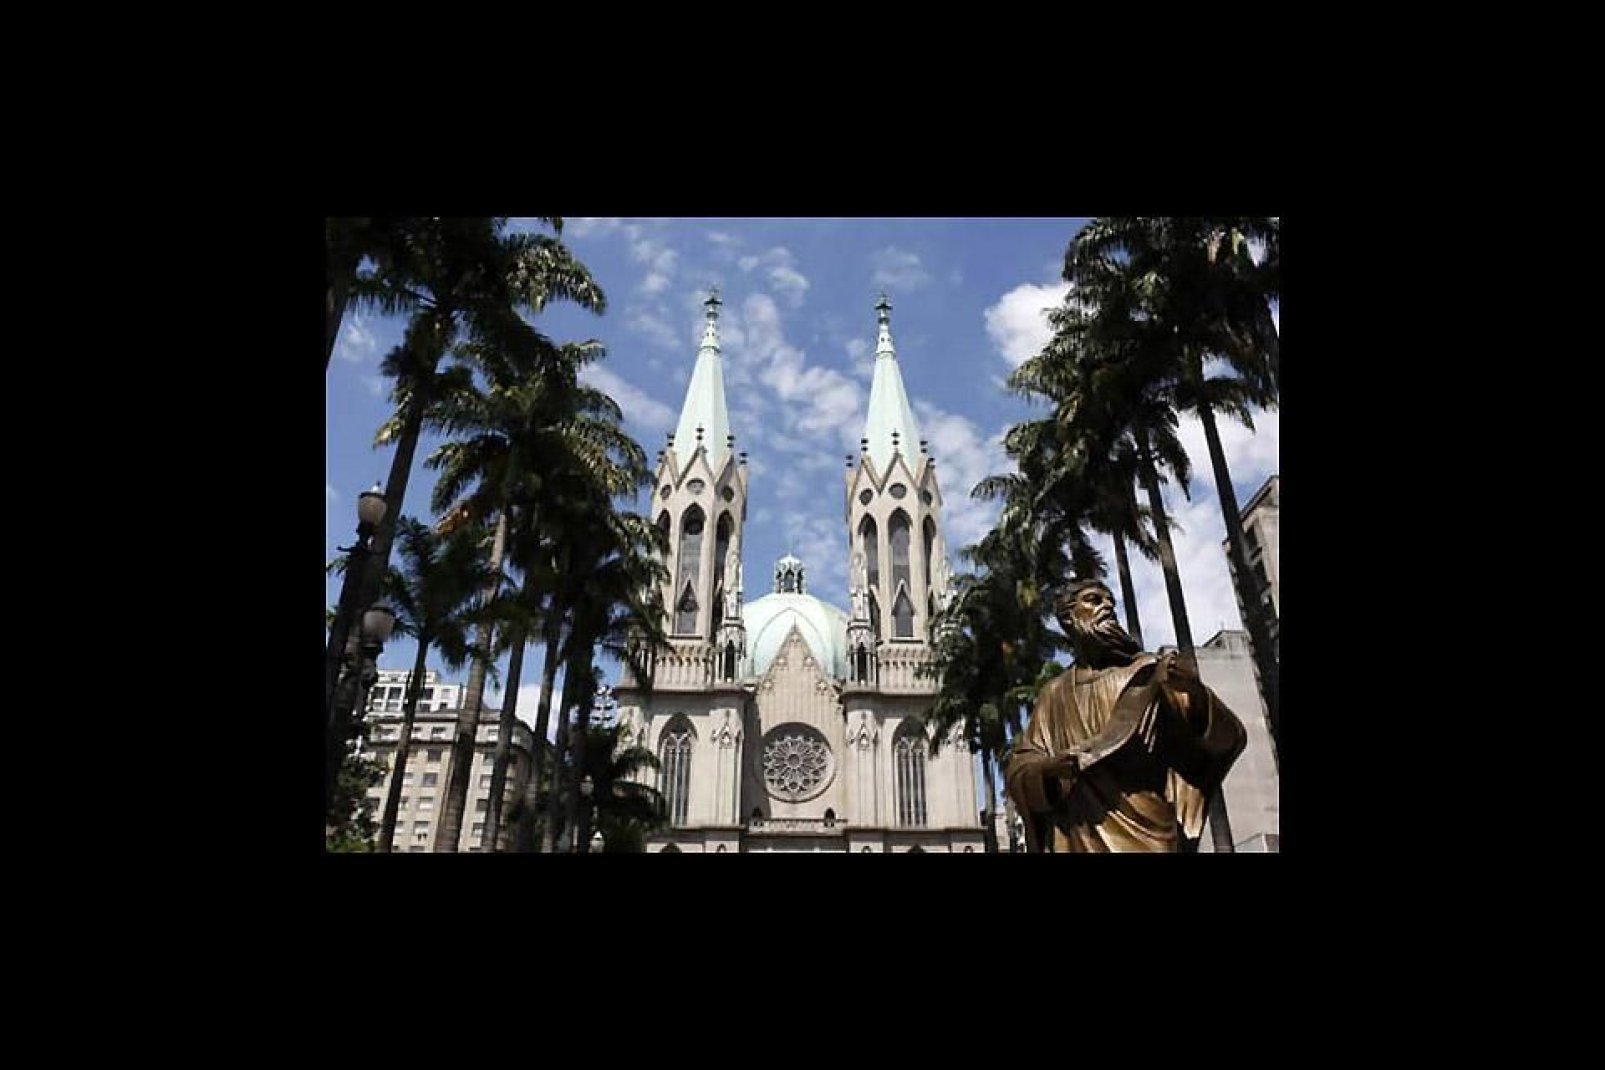 Die Statue des Apostels Paulus befindet sich gegenüber der Kathedrale und erinnert an den Gründer von Sao Paulo. Sie wurde zum Gedenken an seine Bekehrung zum Katholizismus errichtet.